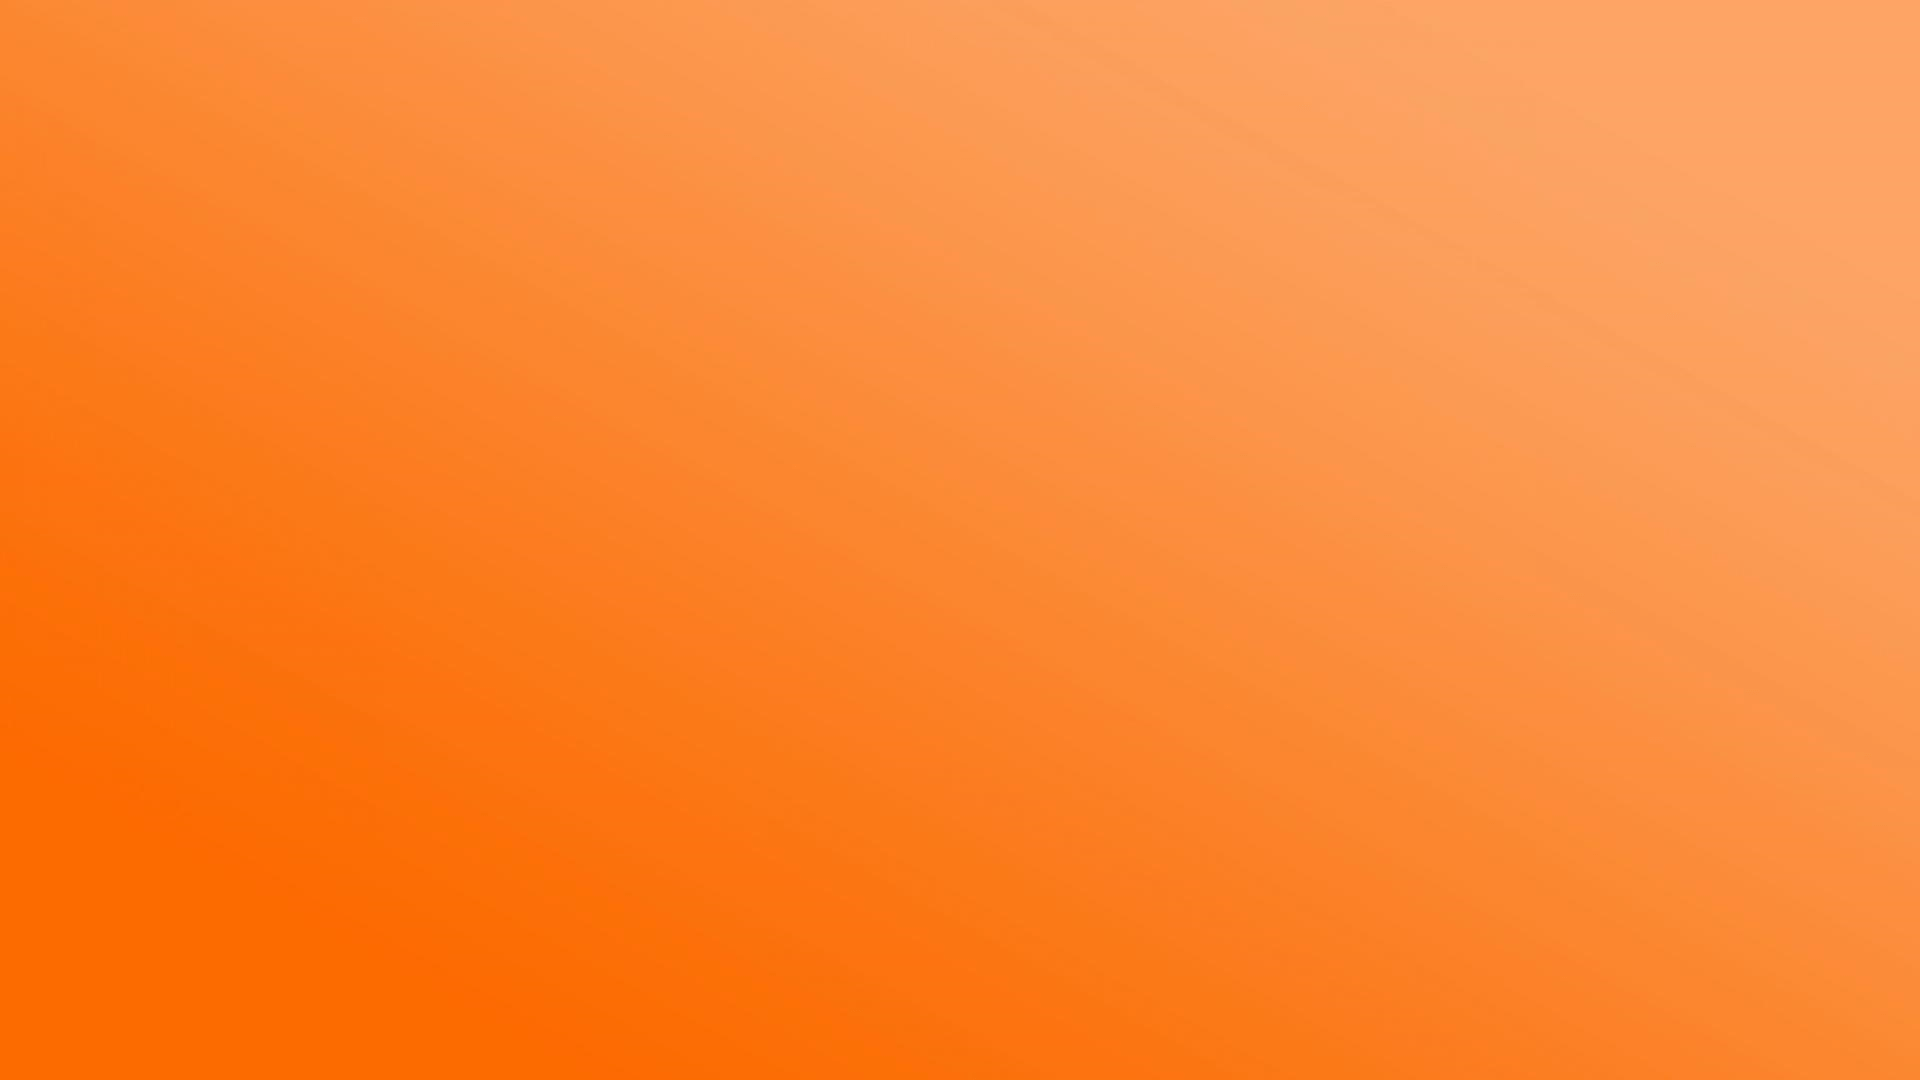 1920x1080 Plain Orange hình nền (Hình ảnh)